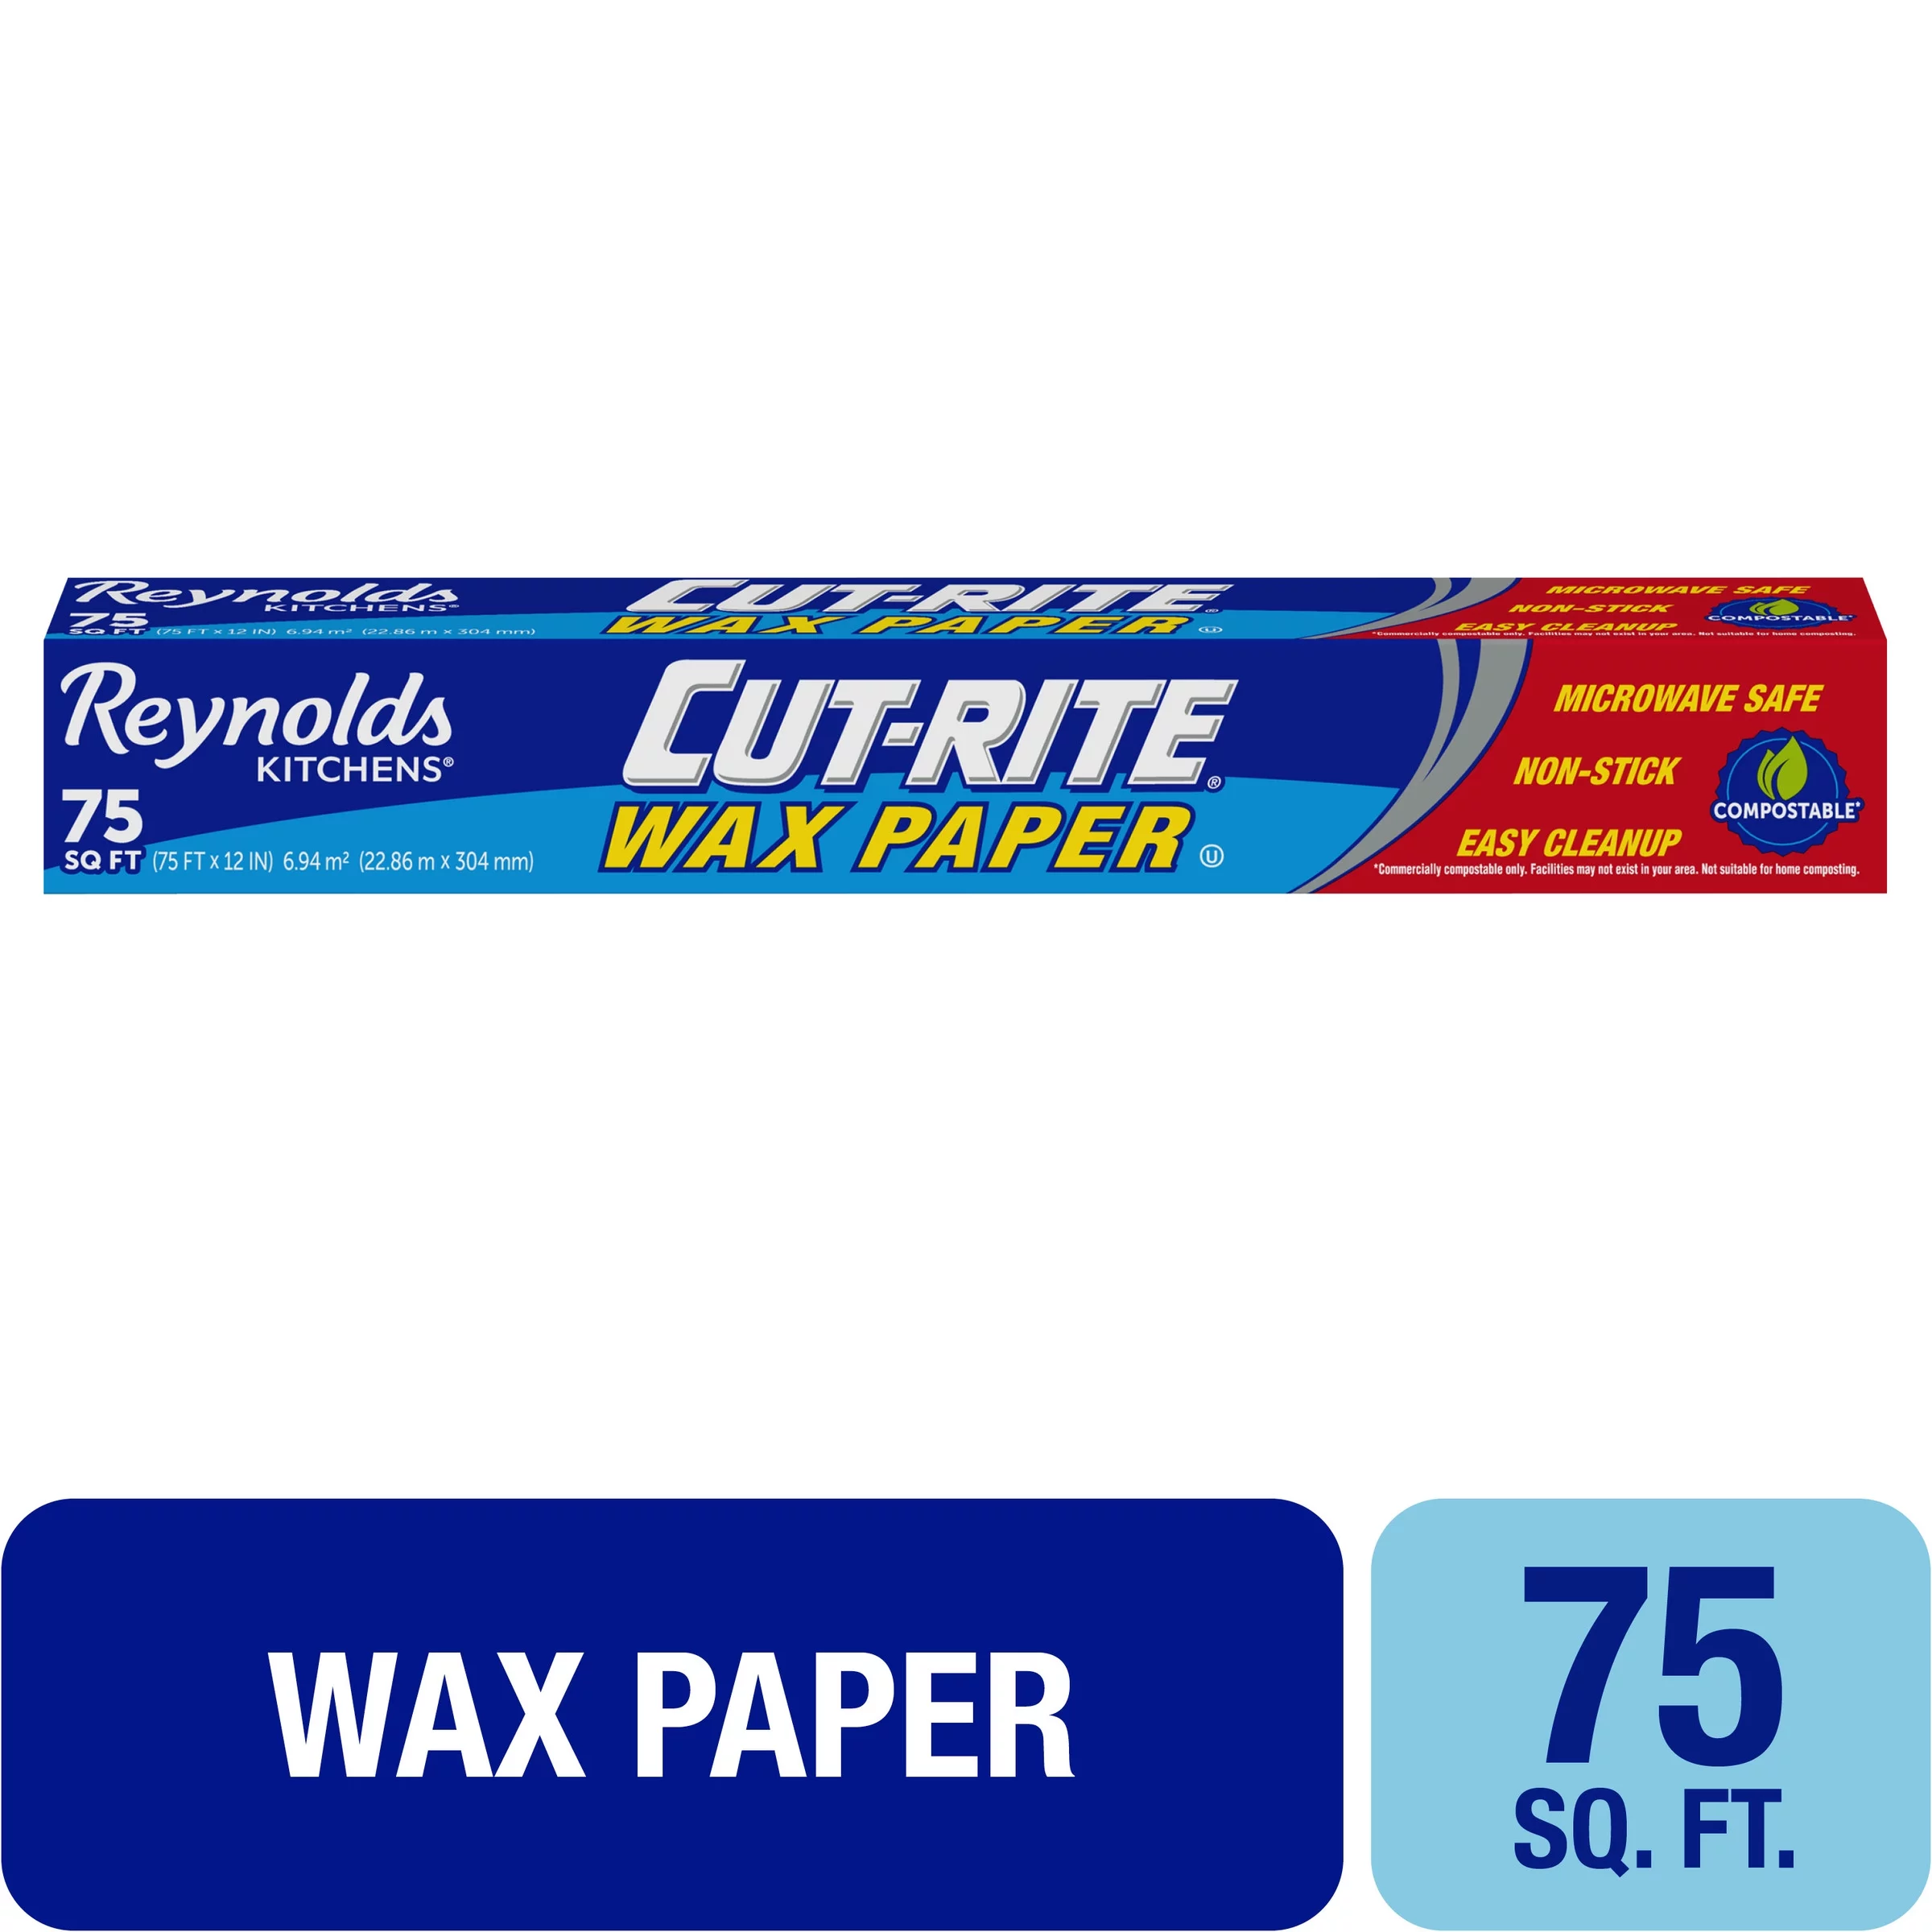 Reynolds Cut-Rite Wax Paper, 75 Square Feet